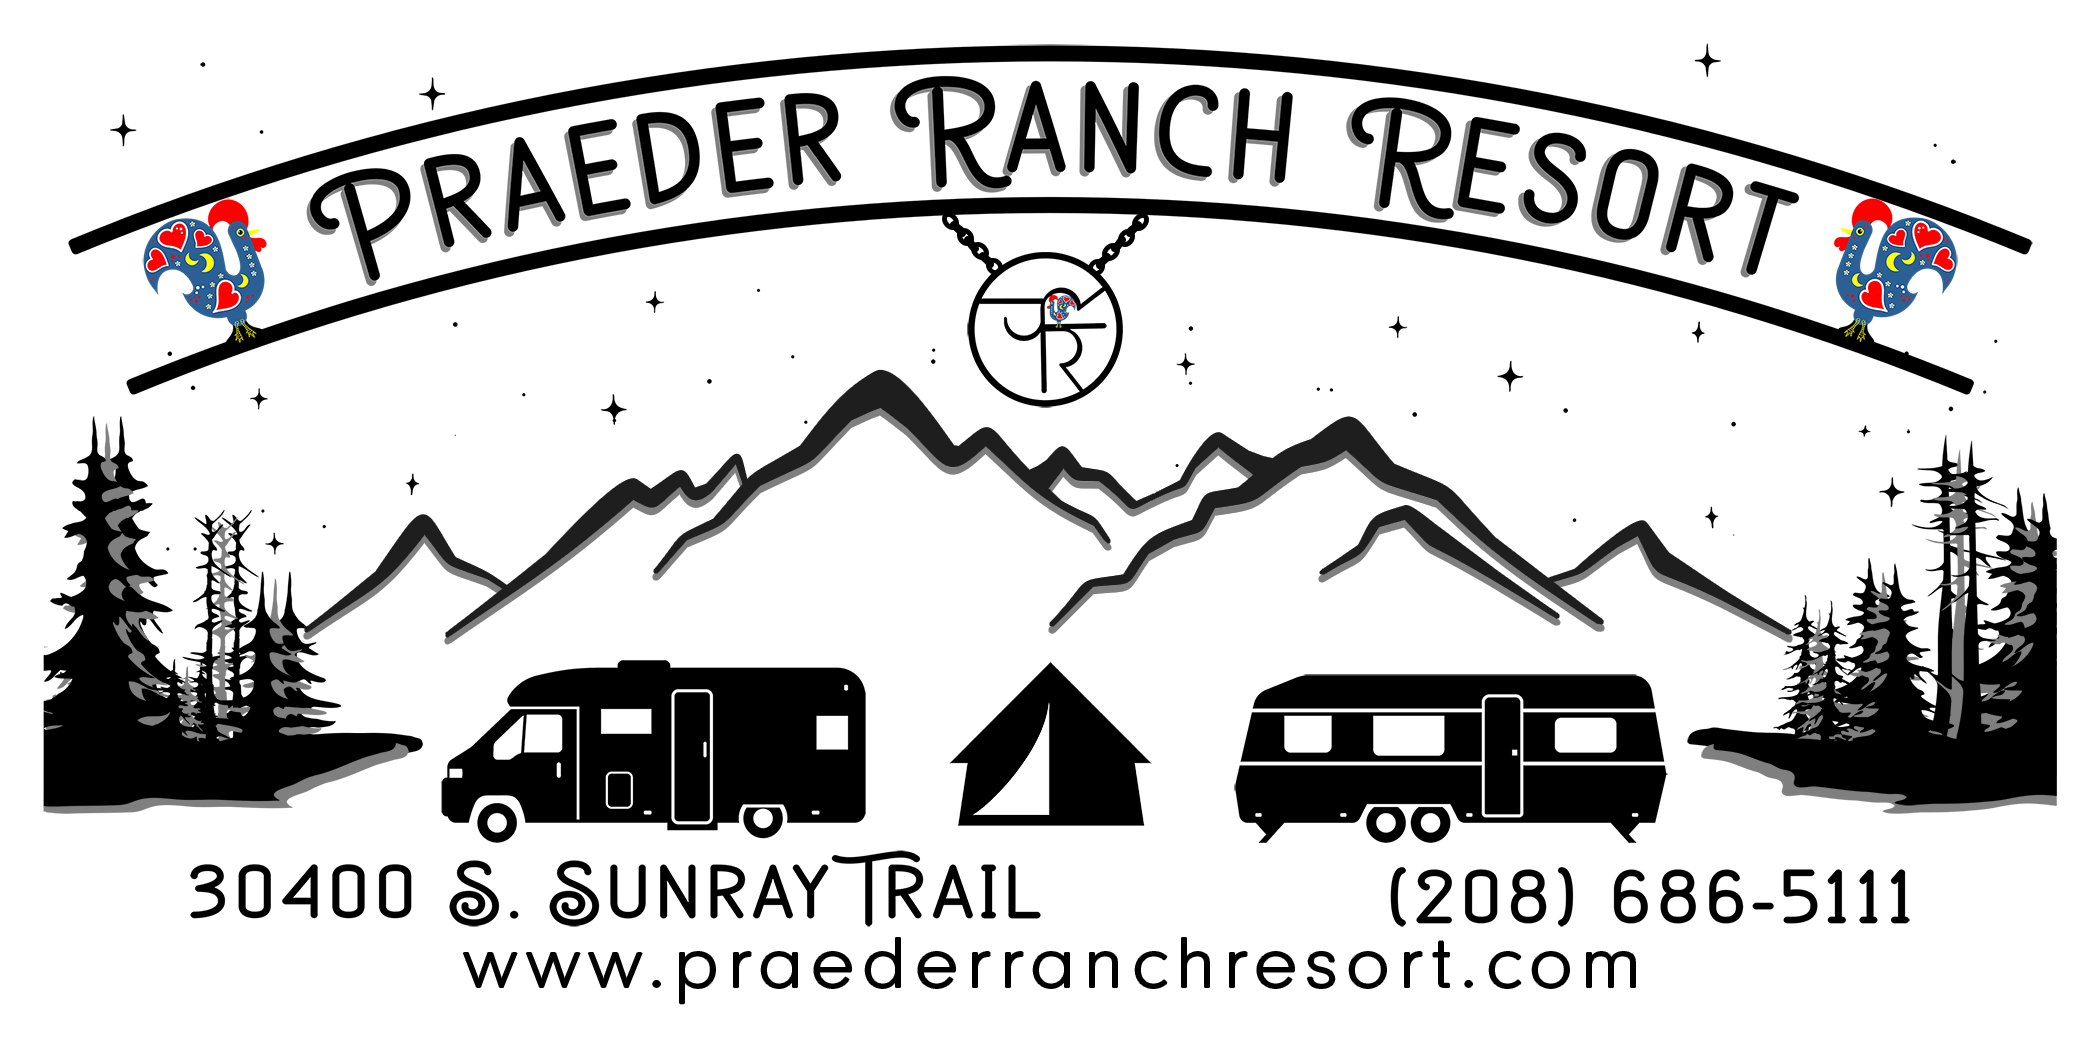 Praeder Ranch Resort